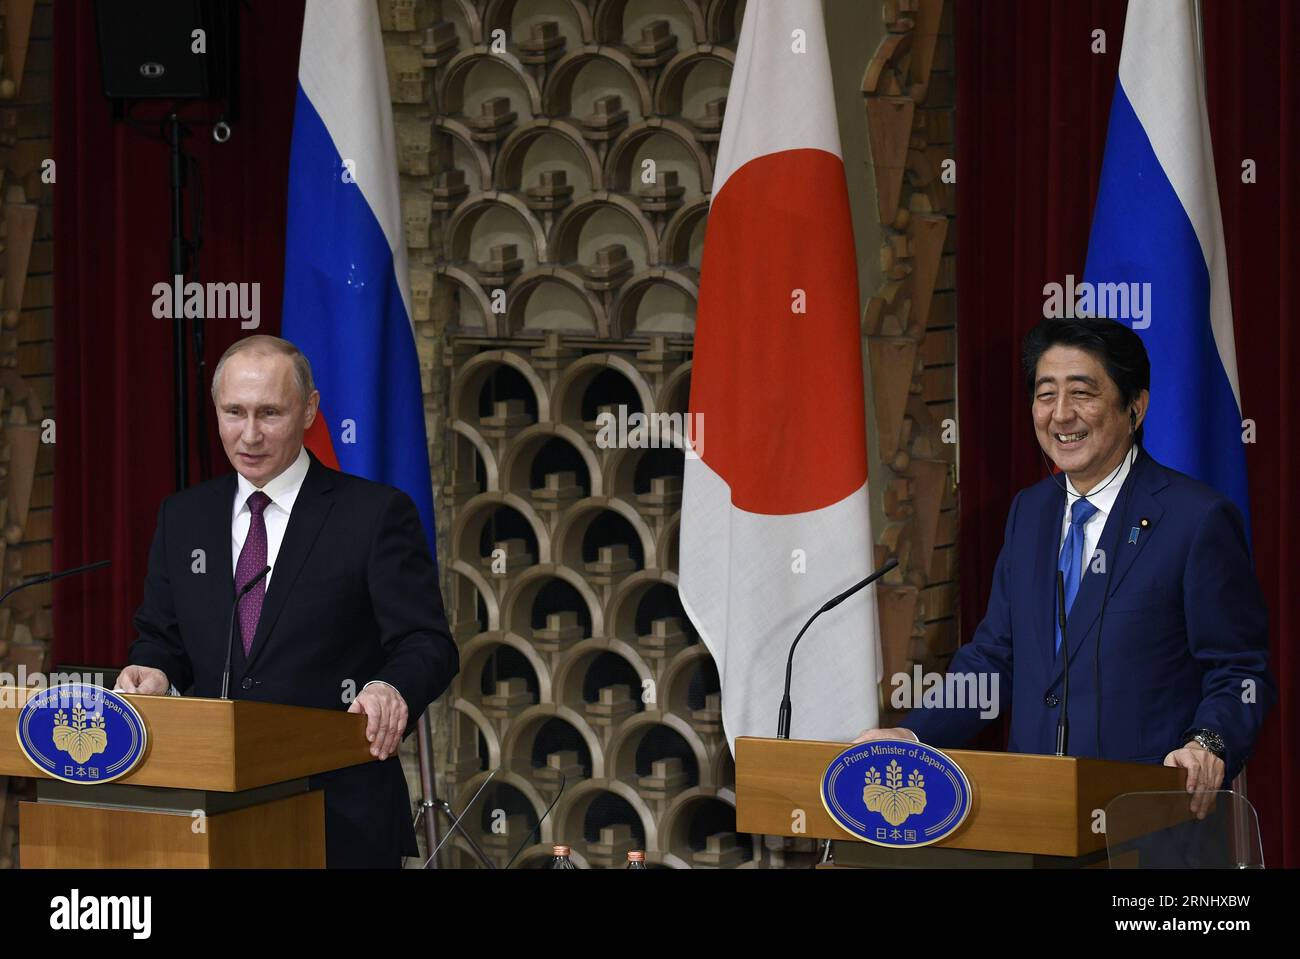 (161216) -- TOKIO, 16. Dezember 2016 () -- der russische Präsident Wladimir Putin (L) und der japanische Premierminister Shinzo Abe nehmen am 16. Dezember 2016 an einer gemeinsamen Pressekonferenz in Abes offiziellem Wohnsitz in Tokio, Japan, Teil. Der russische Präsident Wladimir Putin sagte am Freitag, dass der Inselstreit zwischen Russland und Japan nicht bald gelöst werden kann. () (cl) JAPAN-TOKIO-RUSSLAND-PUTIN-ABE Xinhua PUBLICATIONxNOTxINxCHN Tokio DEZ 16 2016 der russische Präsident Wladimir Putin l und der japanische Premierminister Shinzo ABE nehmen an einer gemeinsamen Pressekonferenz in DER offiziellen ABE-Residenz in Tokio Teil Japan DEZ 16 2016 der russische Präsident Wladimir P Stockfoto